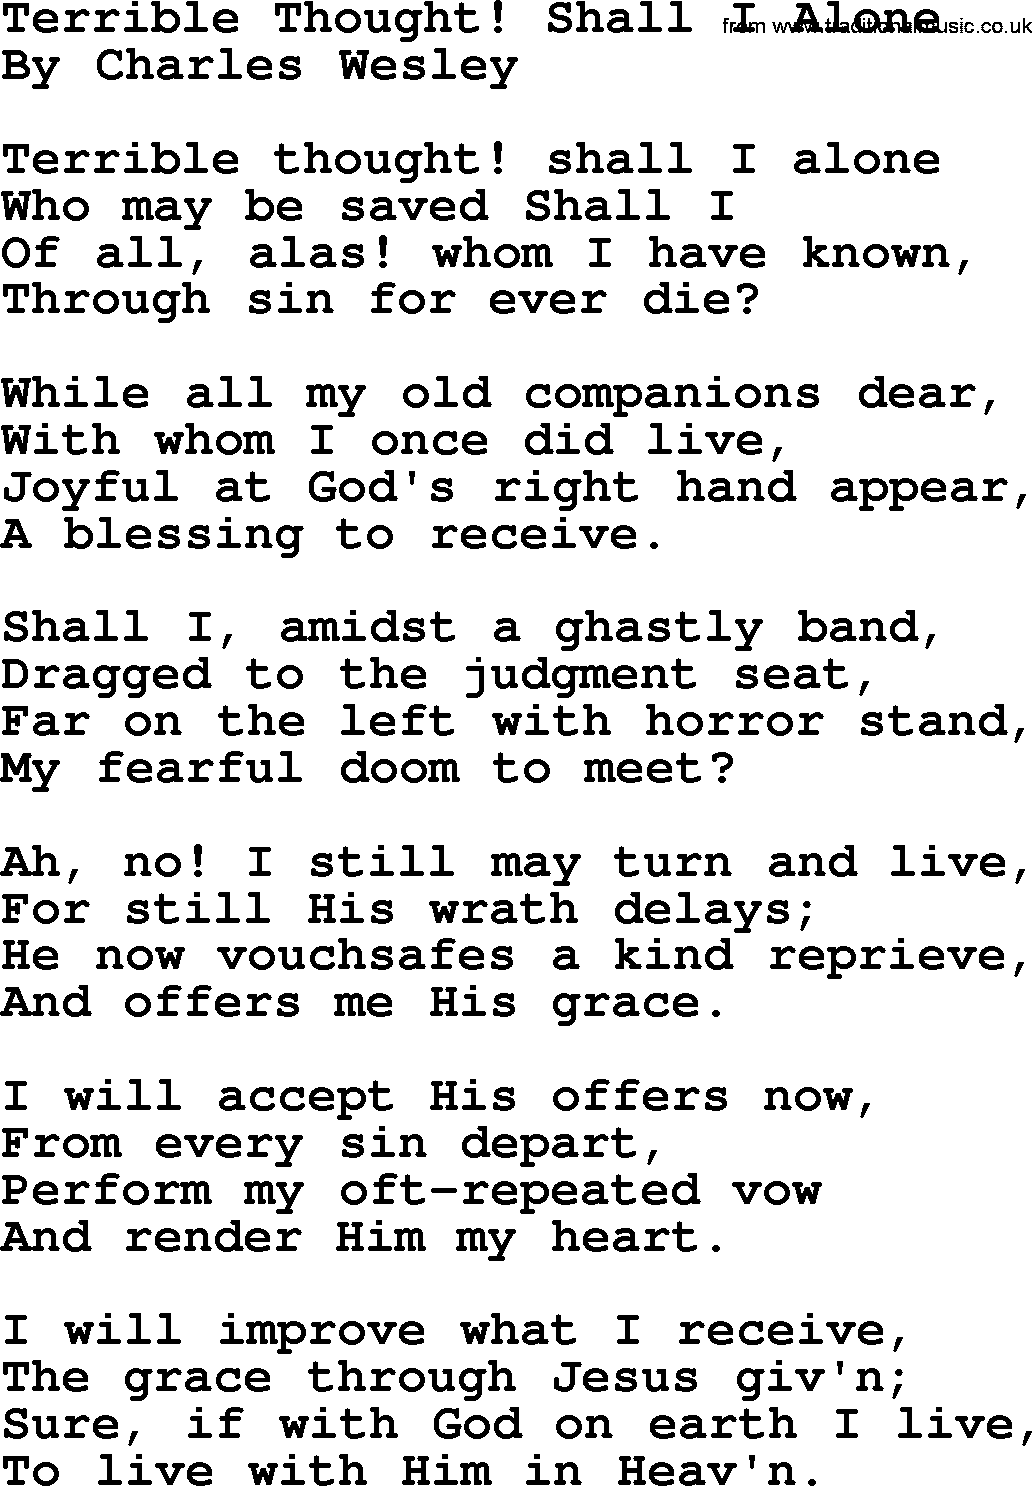 Charles Wesley hymn: Terrible Thought! Shall I Alone, lyrics